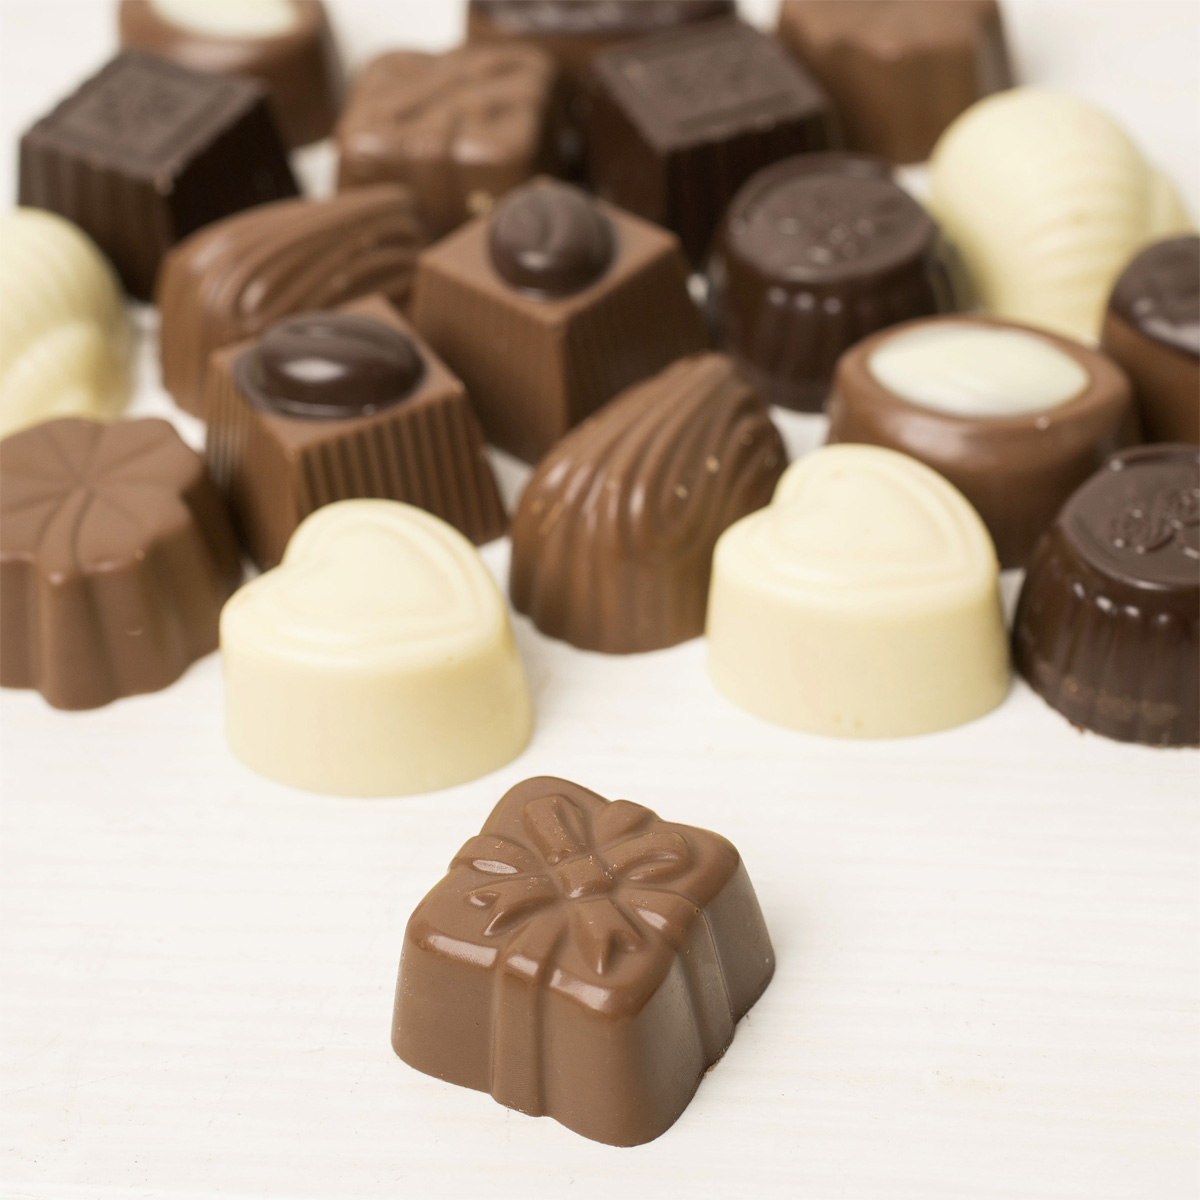 Personalised Belgian Chocolates - 1st Anniversary